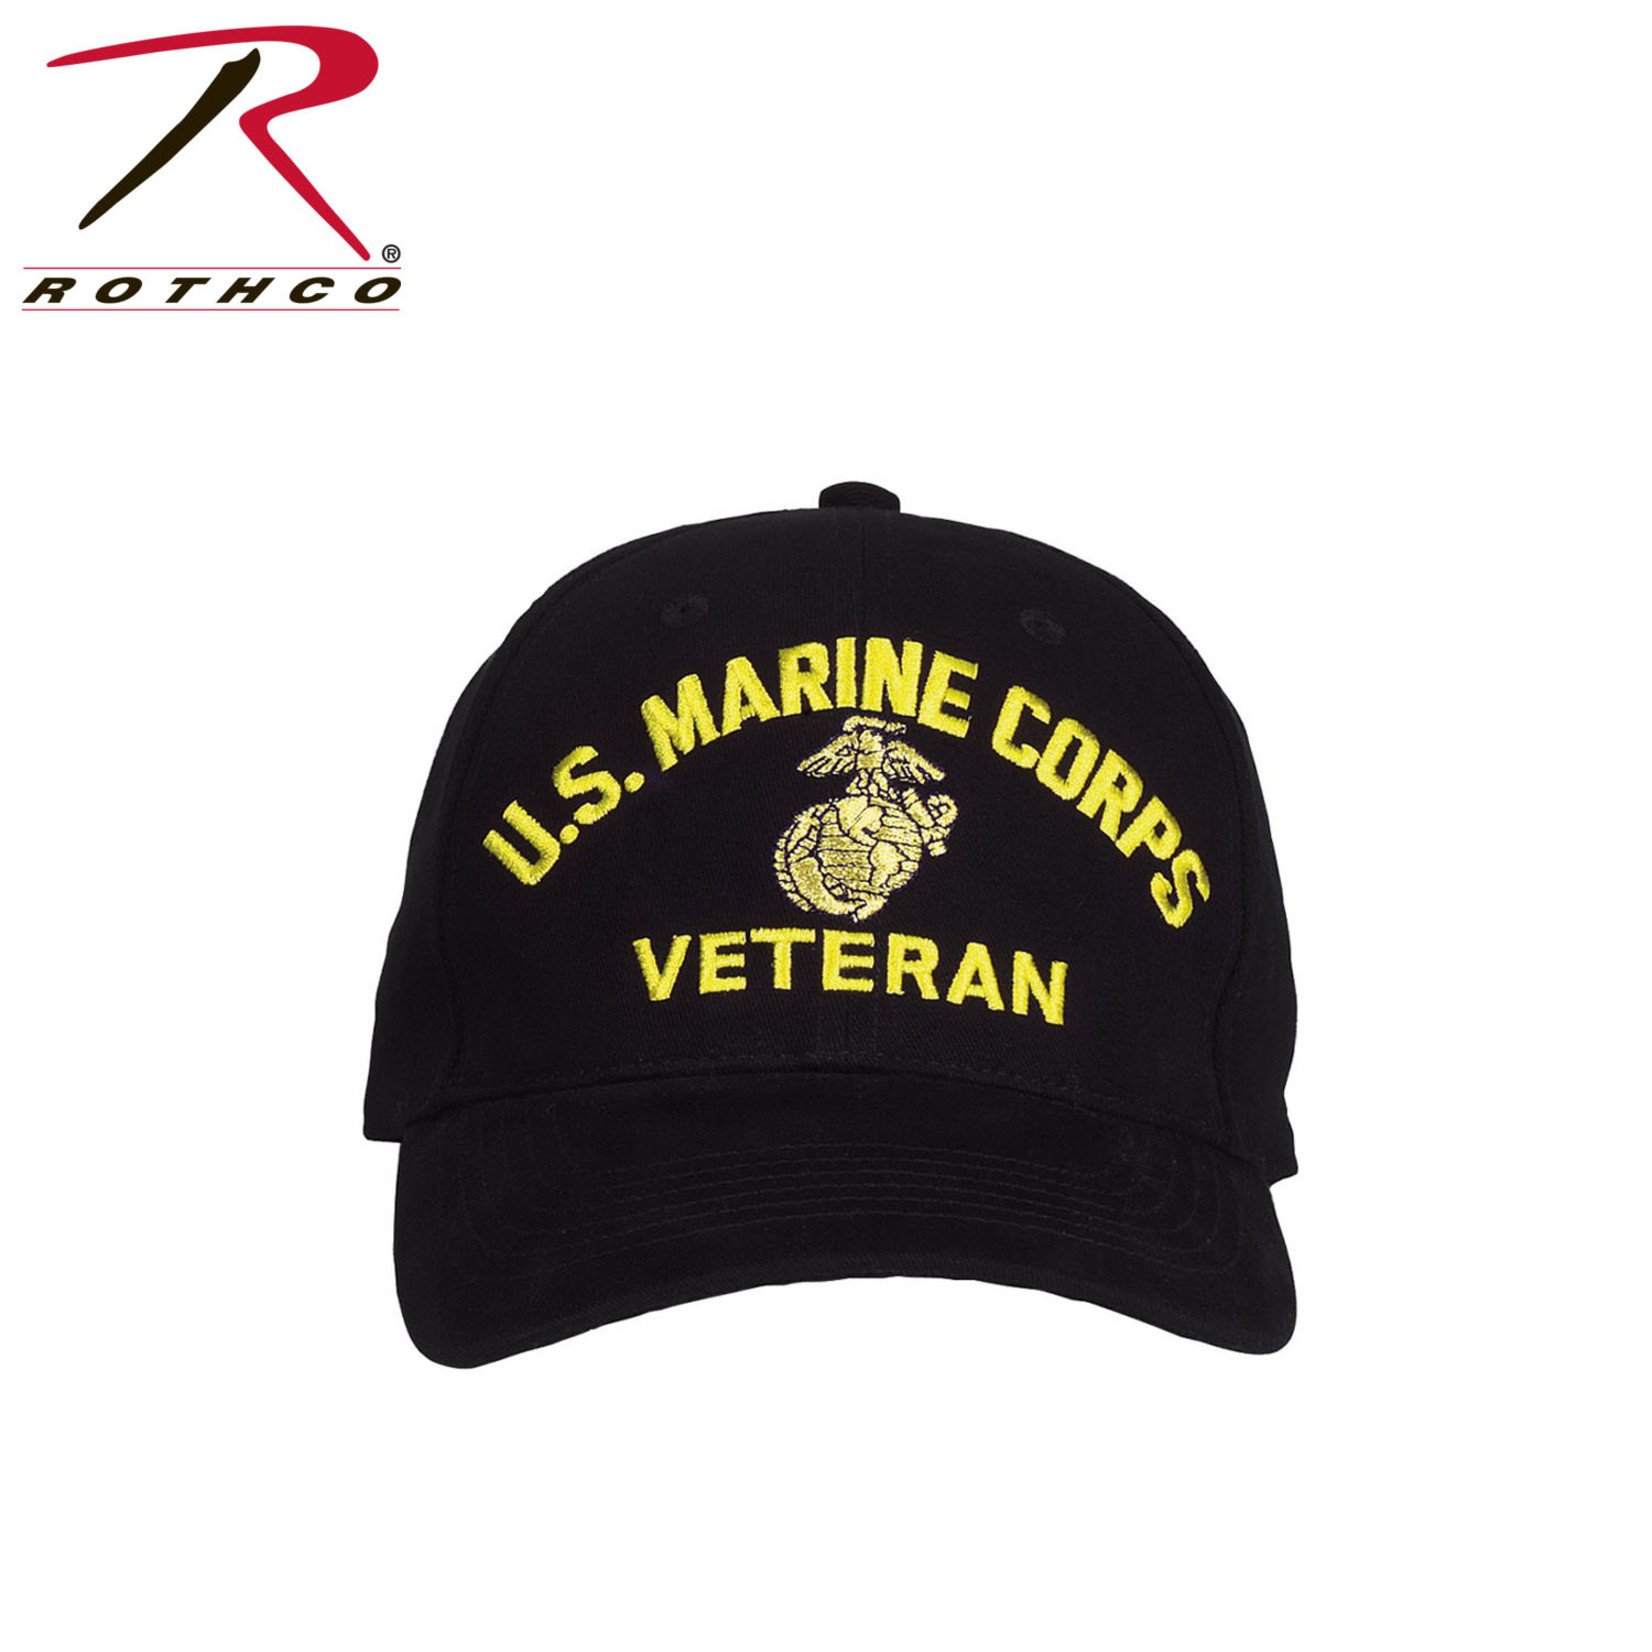 Rothco Rothco Marine Corps Veteran Cap